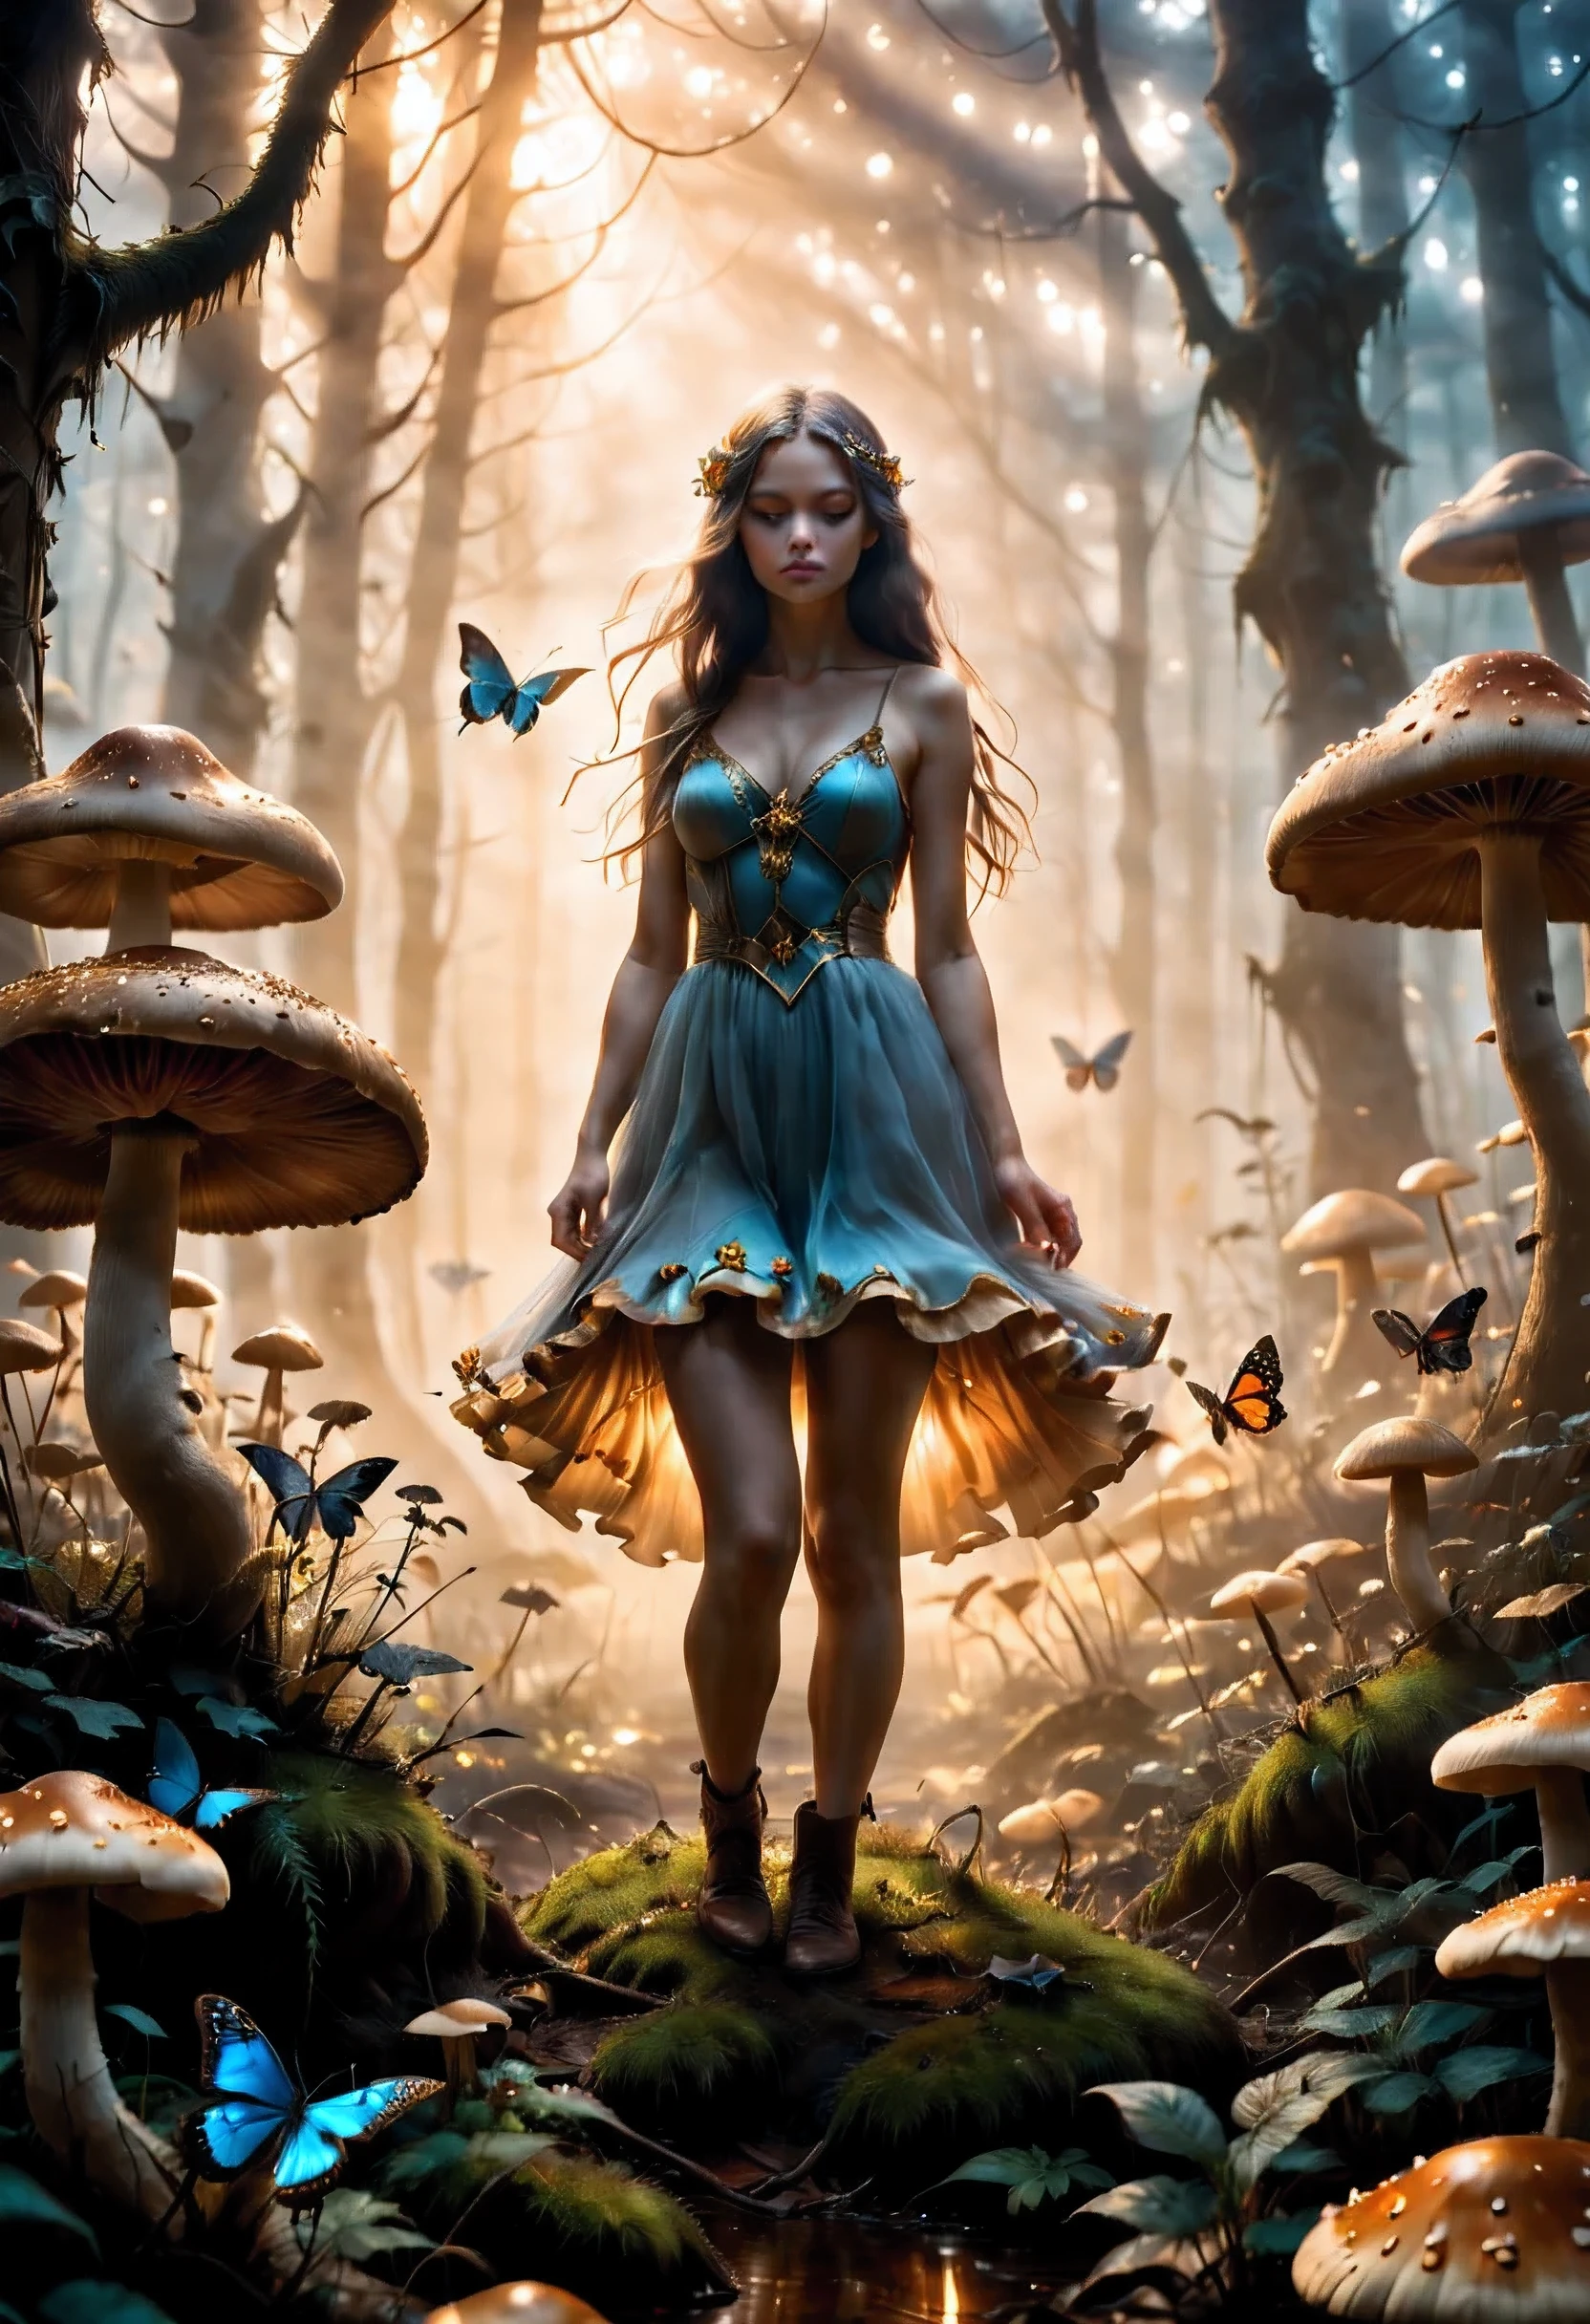 "Фотография «Золотой час», девушка в мистическом тумане, колоссальный гриб, изящные бабочки, потусторонняя магия, Композиция по правилу третей"